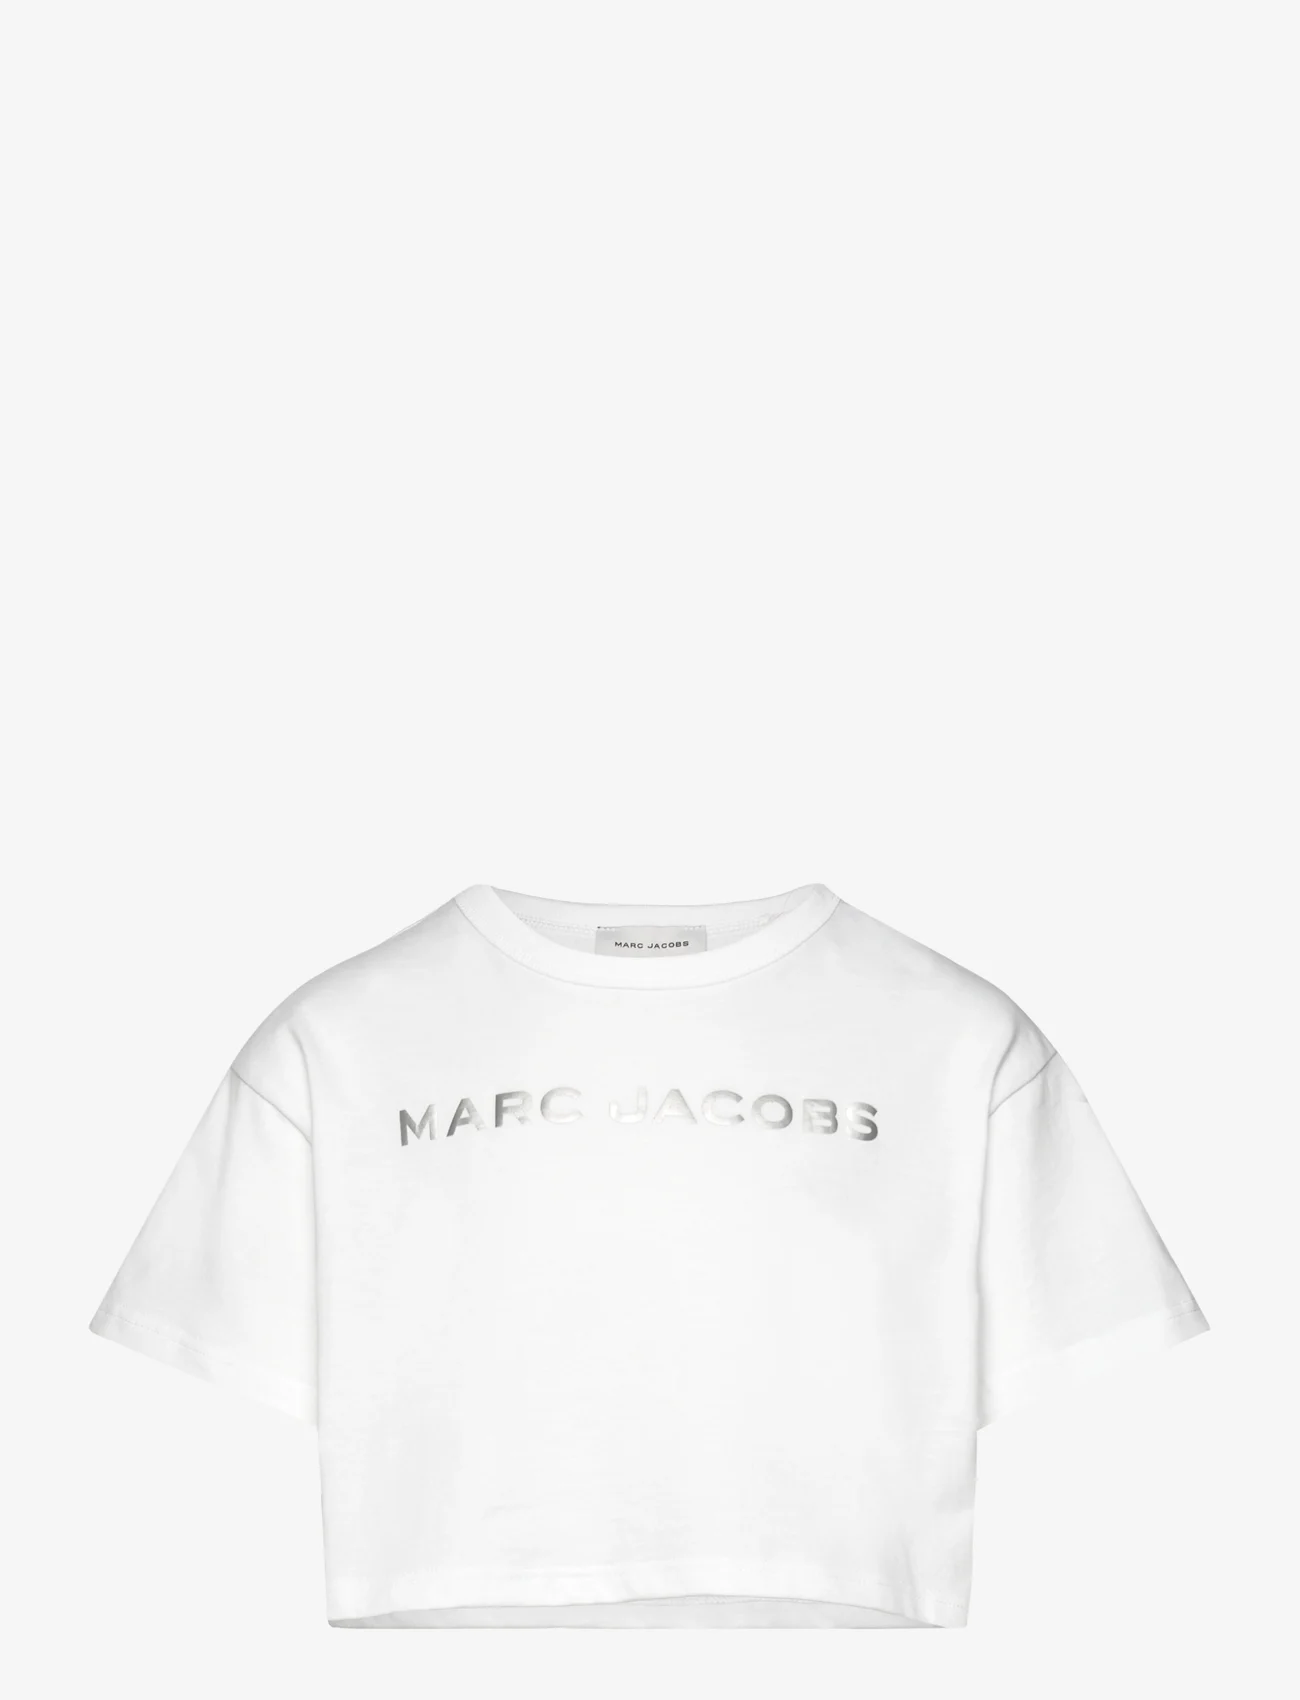 Little Marc Jacobs - SHORT SLEEVES TEE-SHIRT - kortermede t-skjorter - white - 0